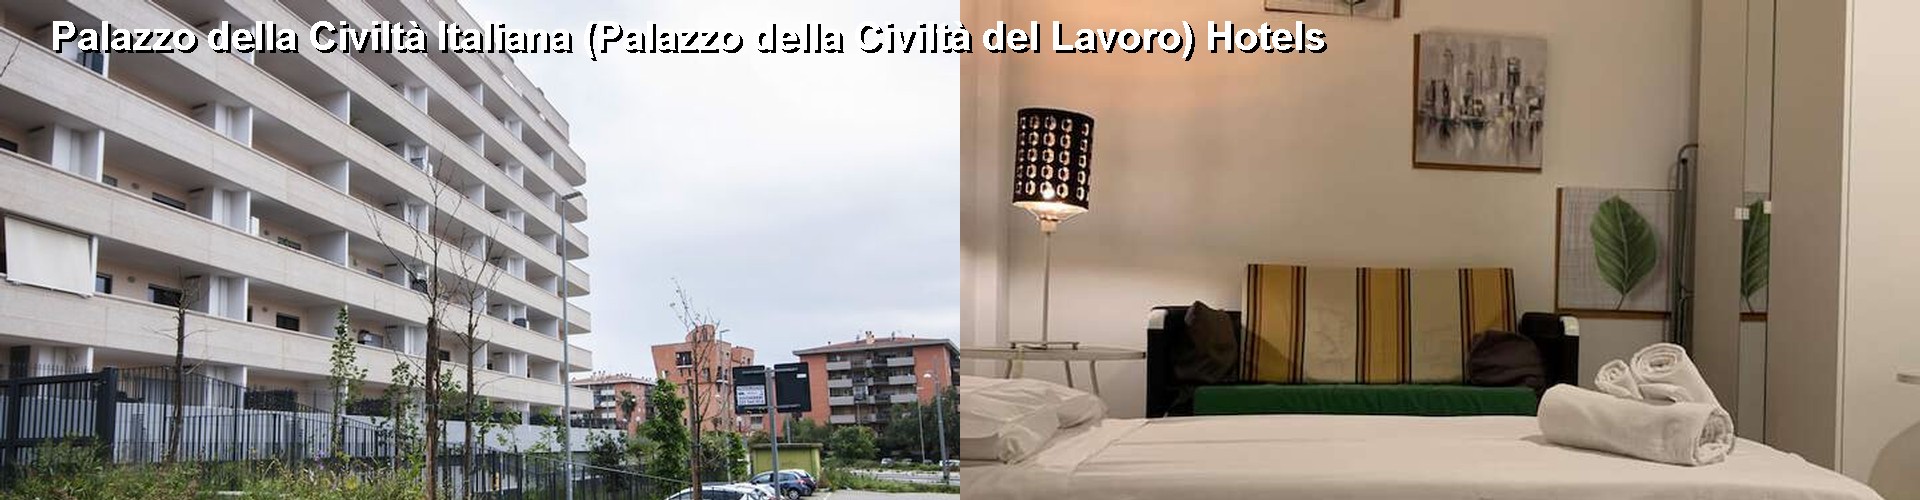 5 Best Hotels near Palazzo della Civiltà Italiana (Palazzo della Civiltà del Lavoro)